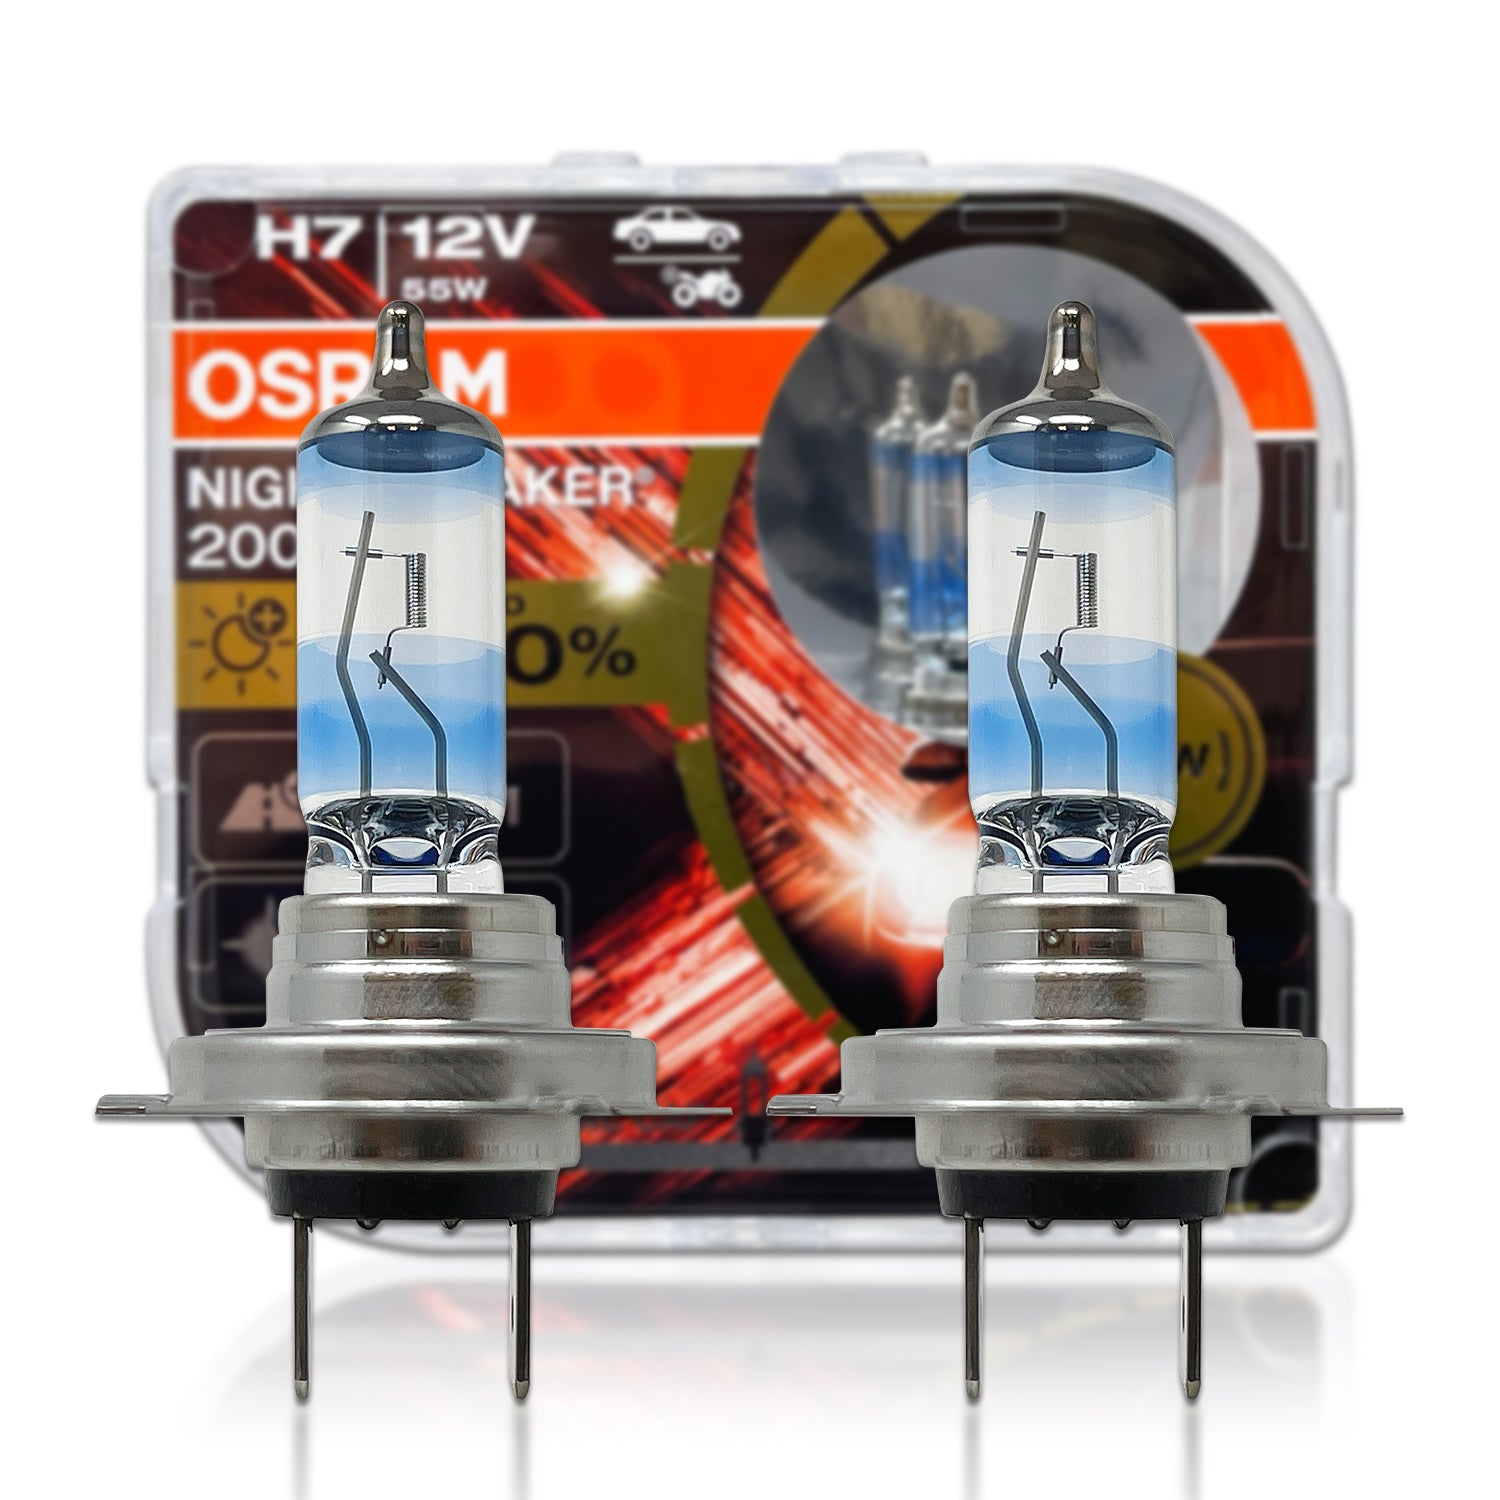 OSRAM H7 High Power  Night Breaker 200 Bulbs (Pair) – Powerful UK